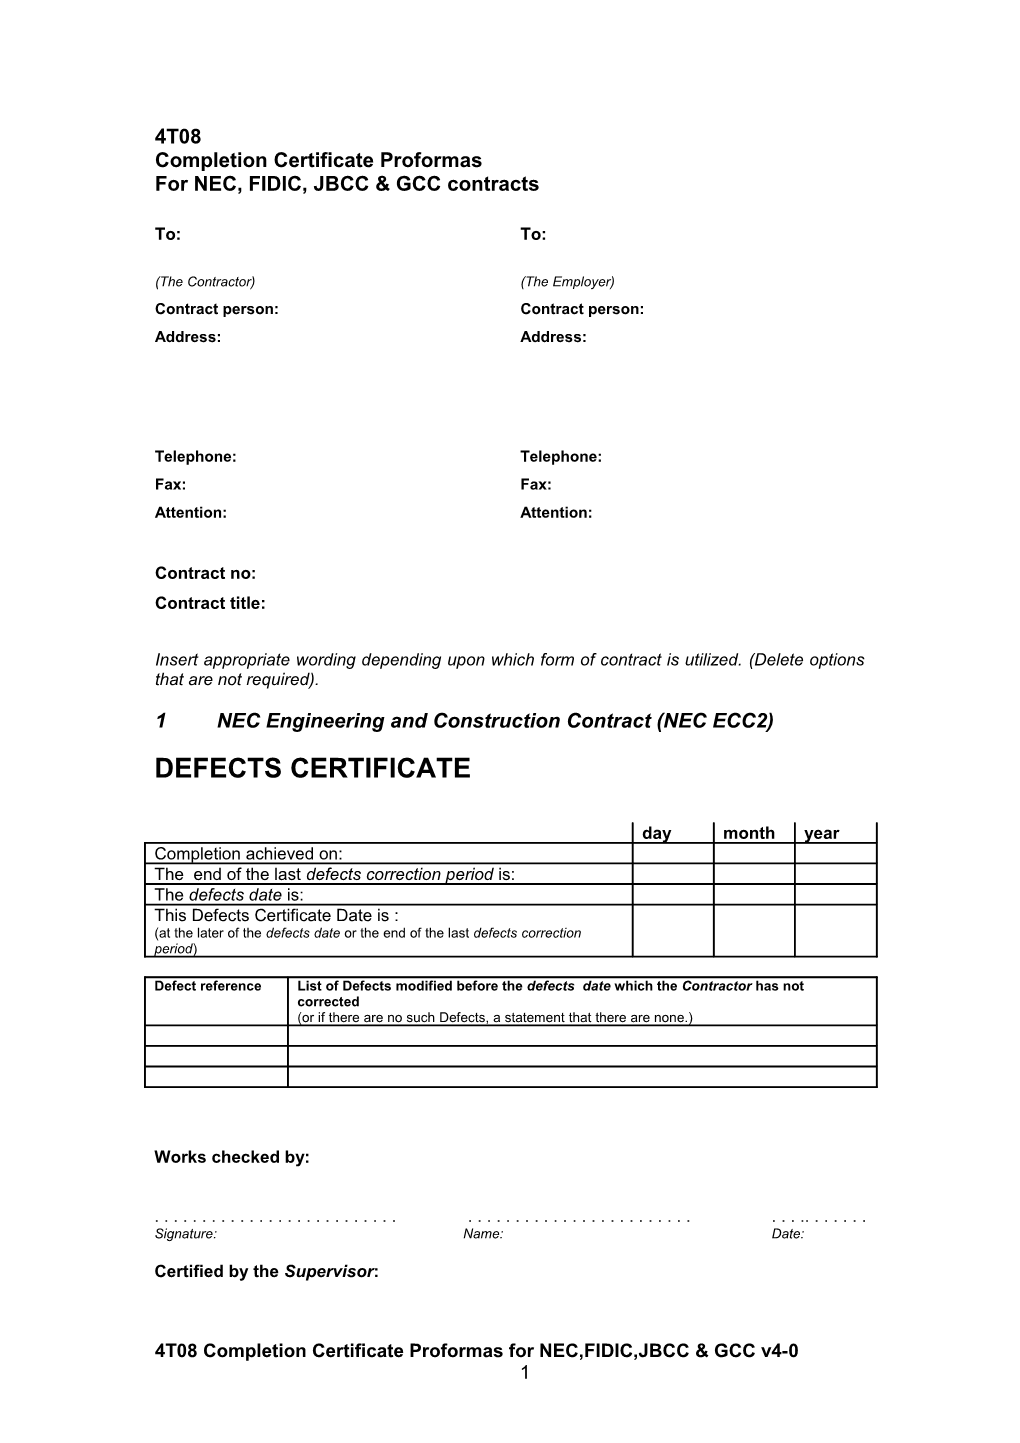 DP2-T21 Final Completion Certificate V4-0